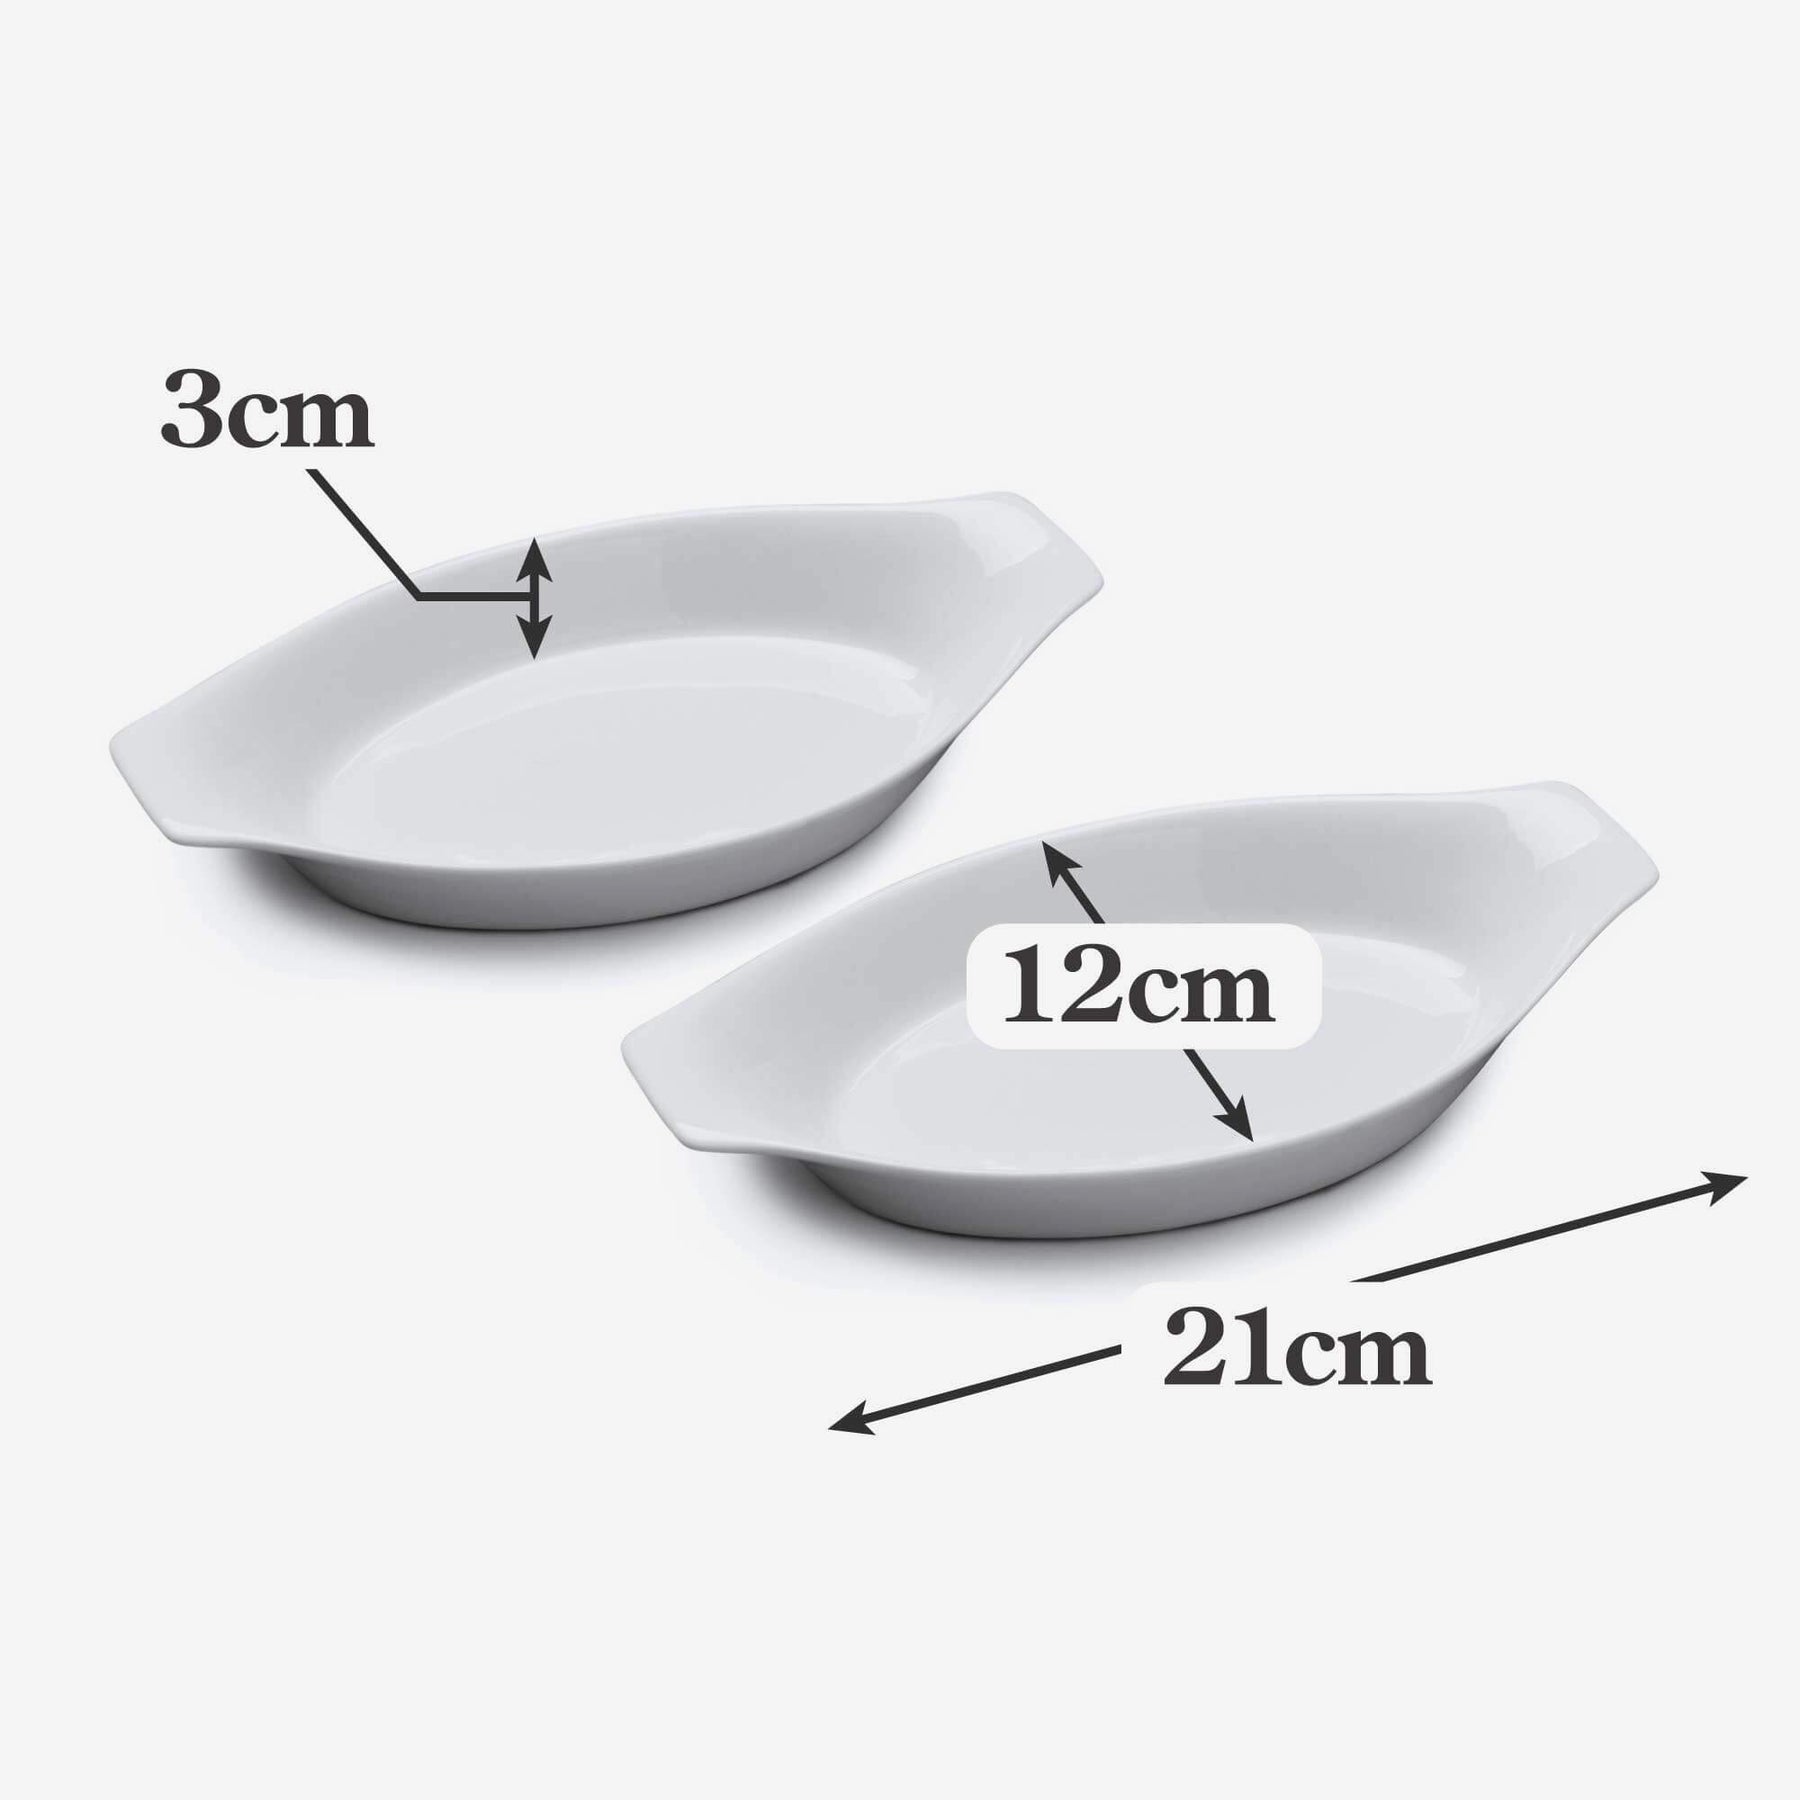 Porcelain Oval Gratin Dish (21cm), Set of 2